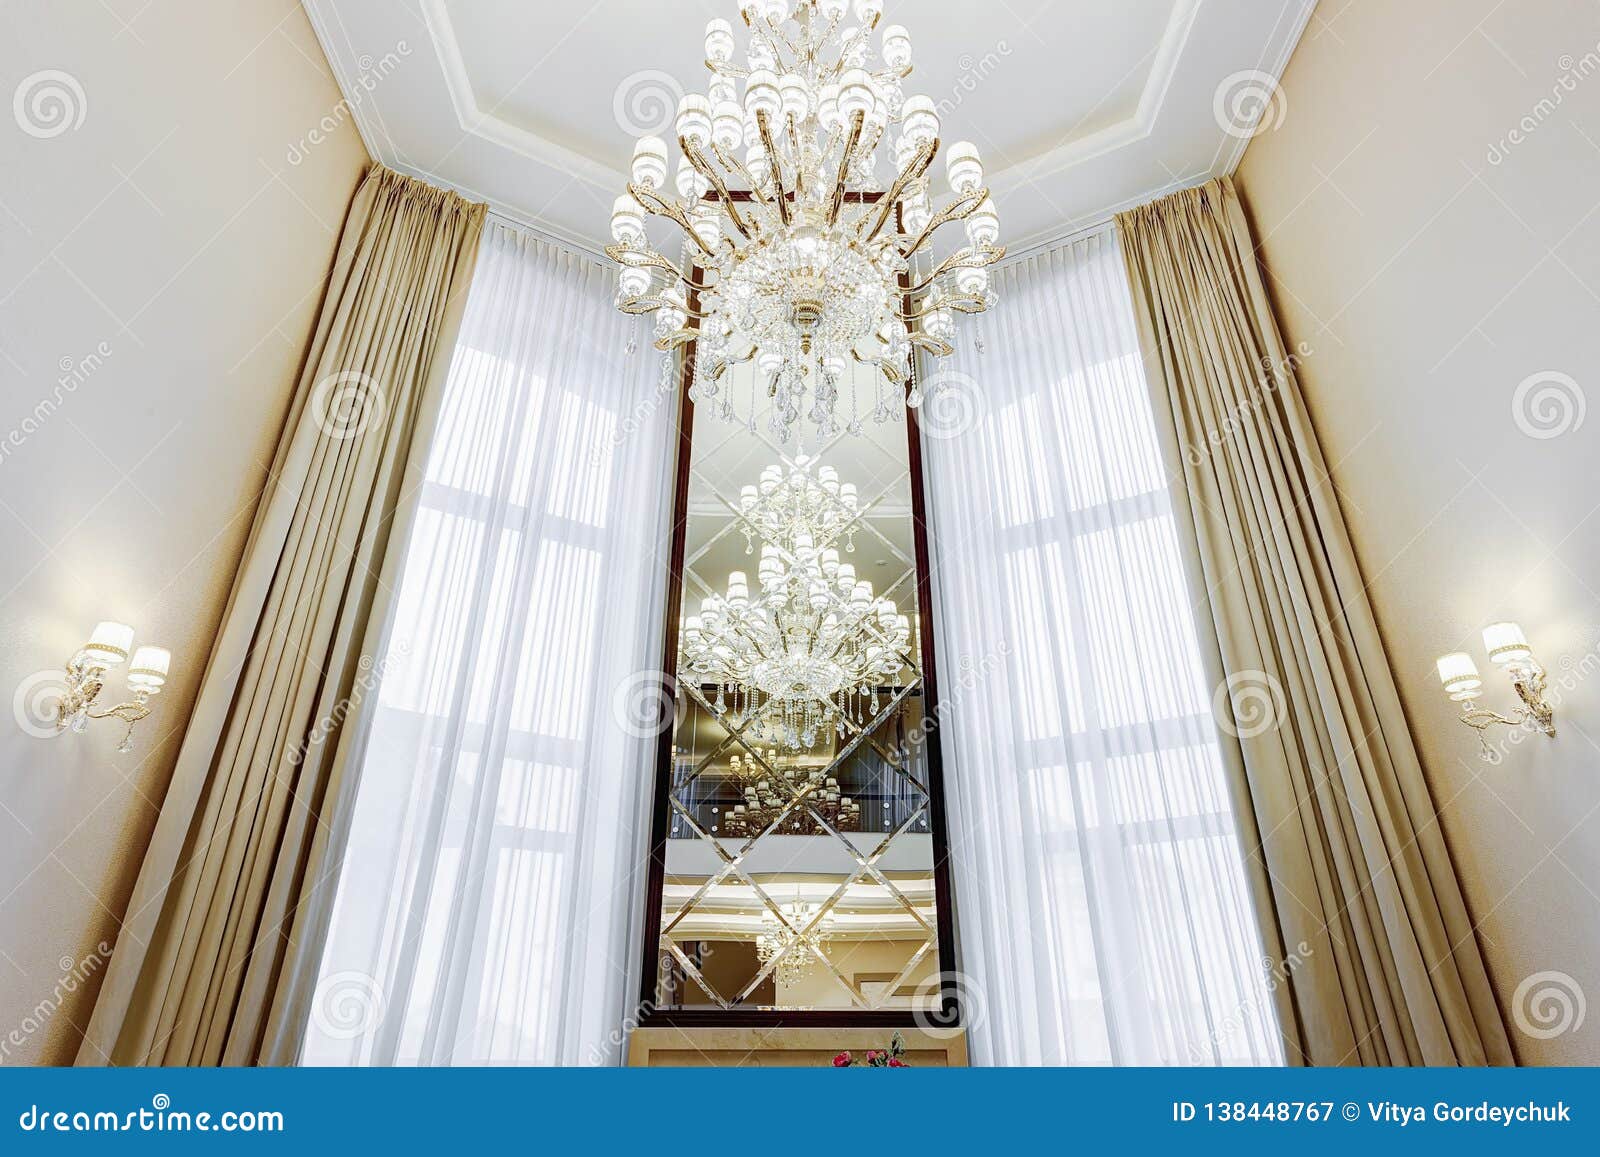 Long Mirror Between Windows In Luxury Interior Stock Image